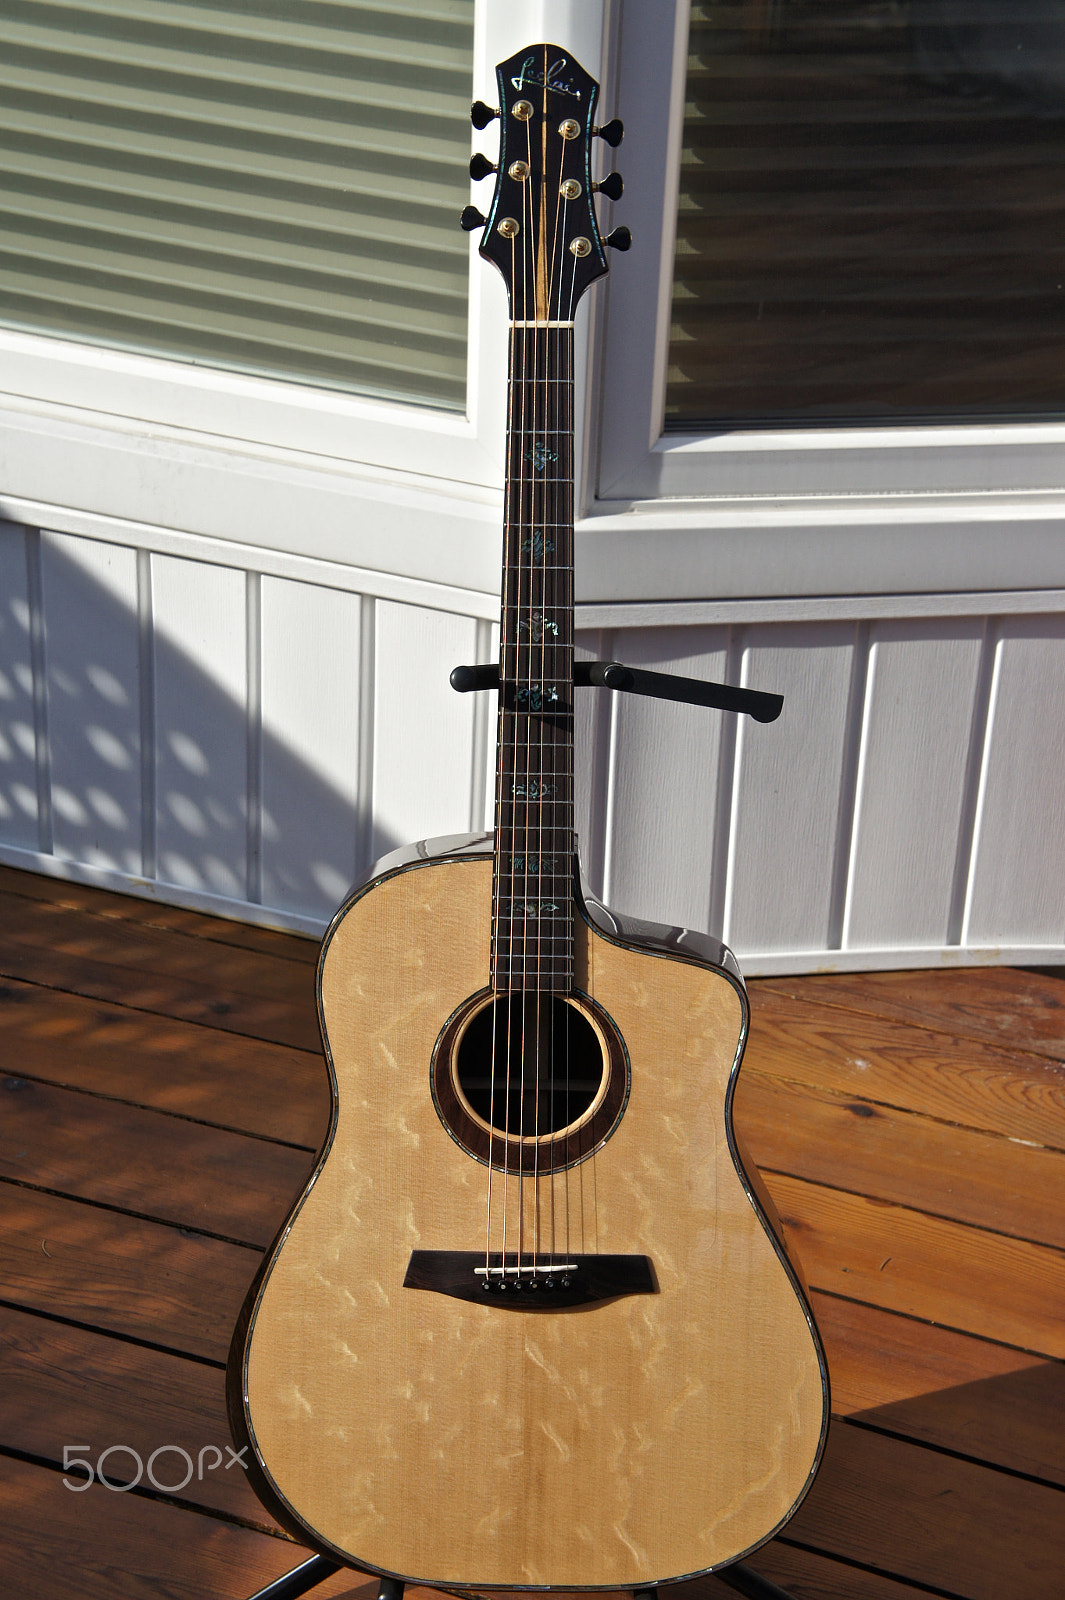 Sony Alpha NEX-5 sample photo. Leclair custom guitar photography